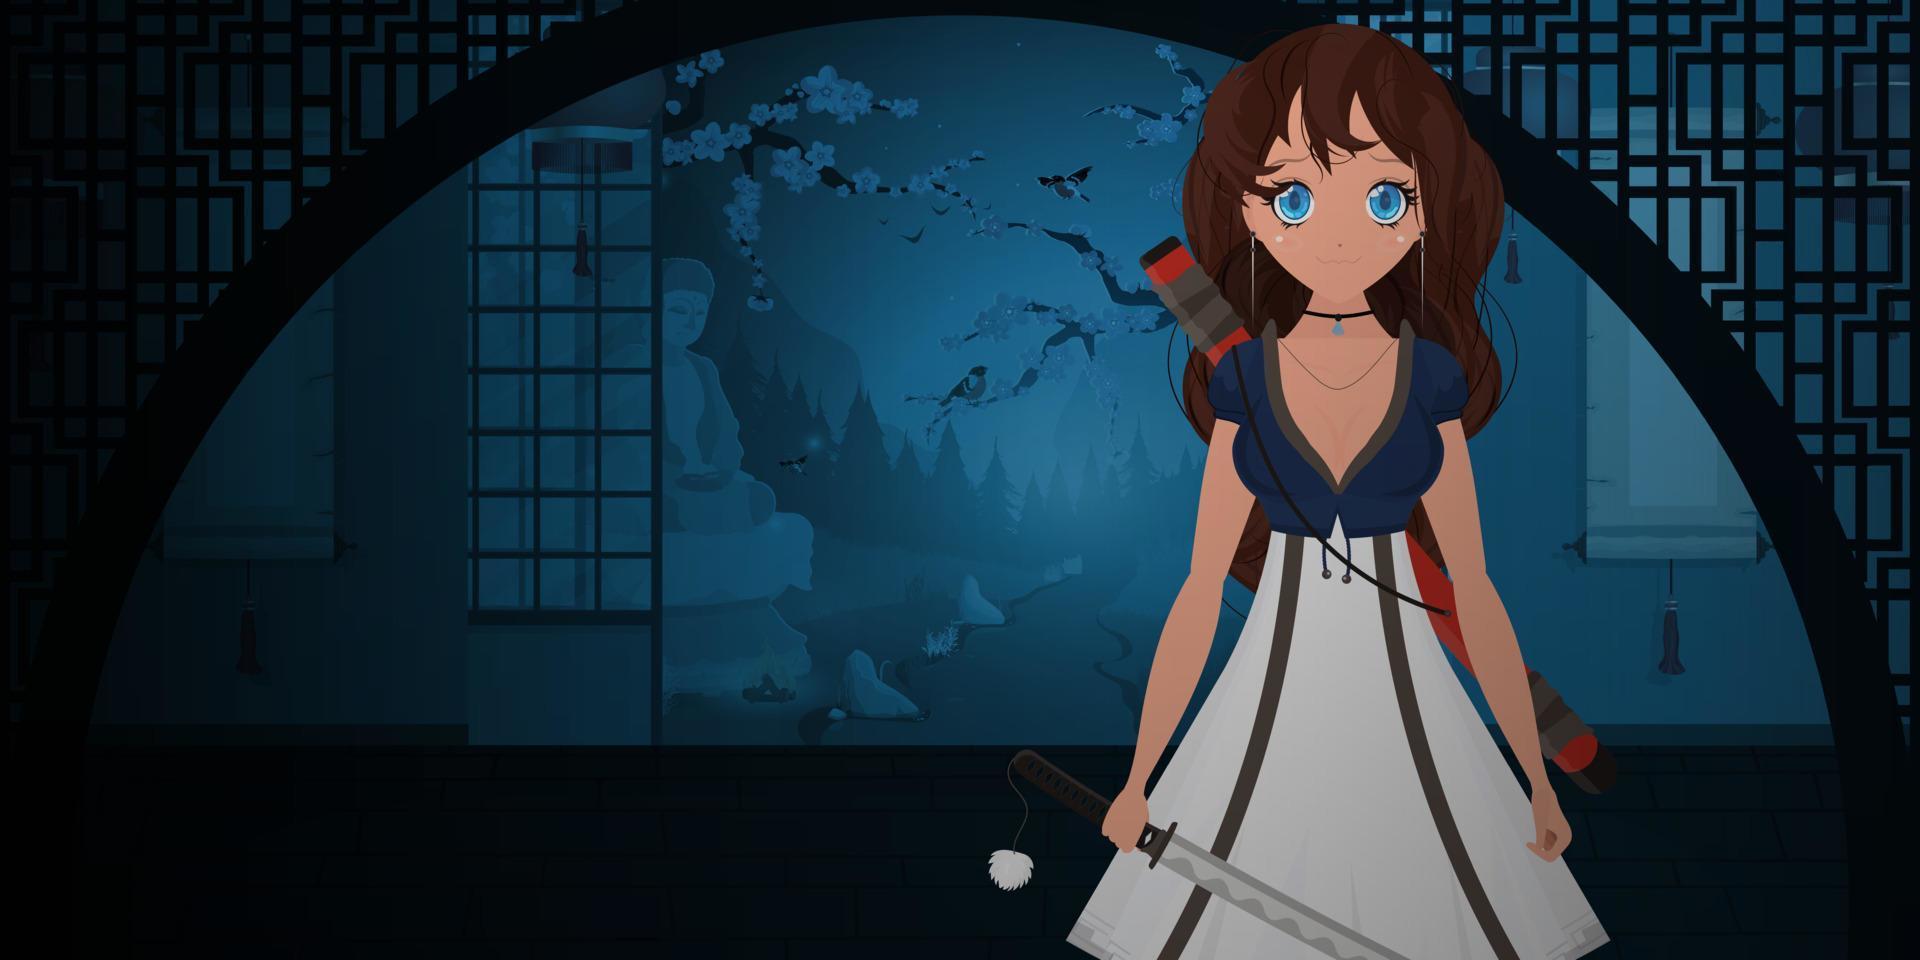 una chica con una katana con un vestido blanco en una casa japonesa viranda. noche en japón. anime mujer samurái. estilo de dibujos animados, ilustración vectorial. vector